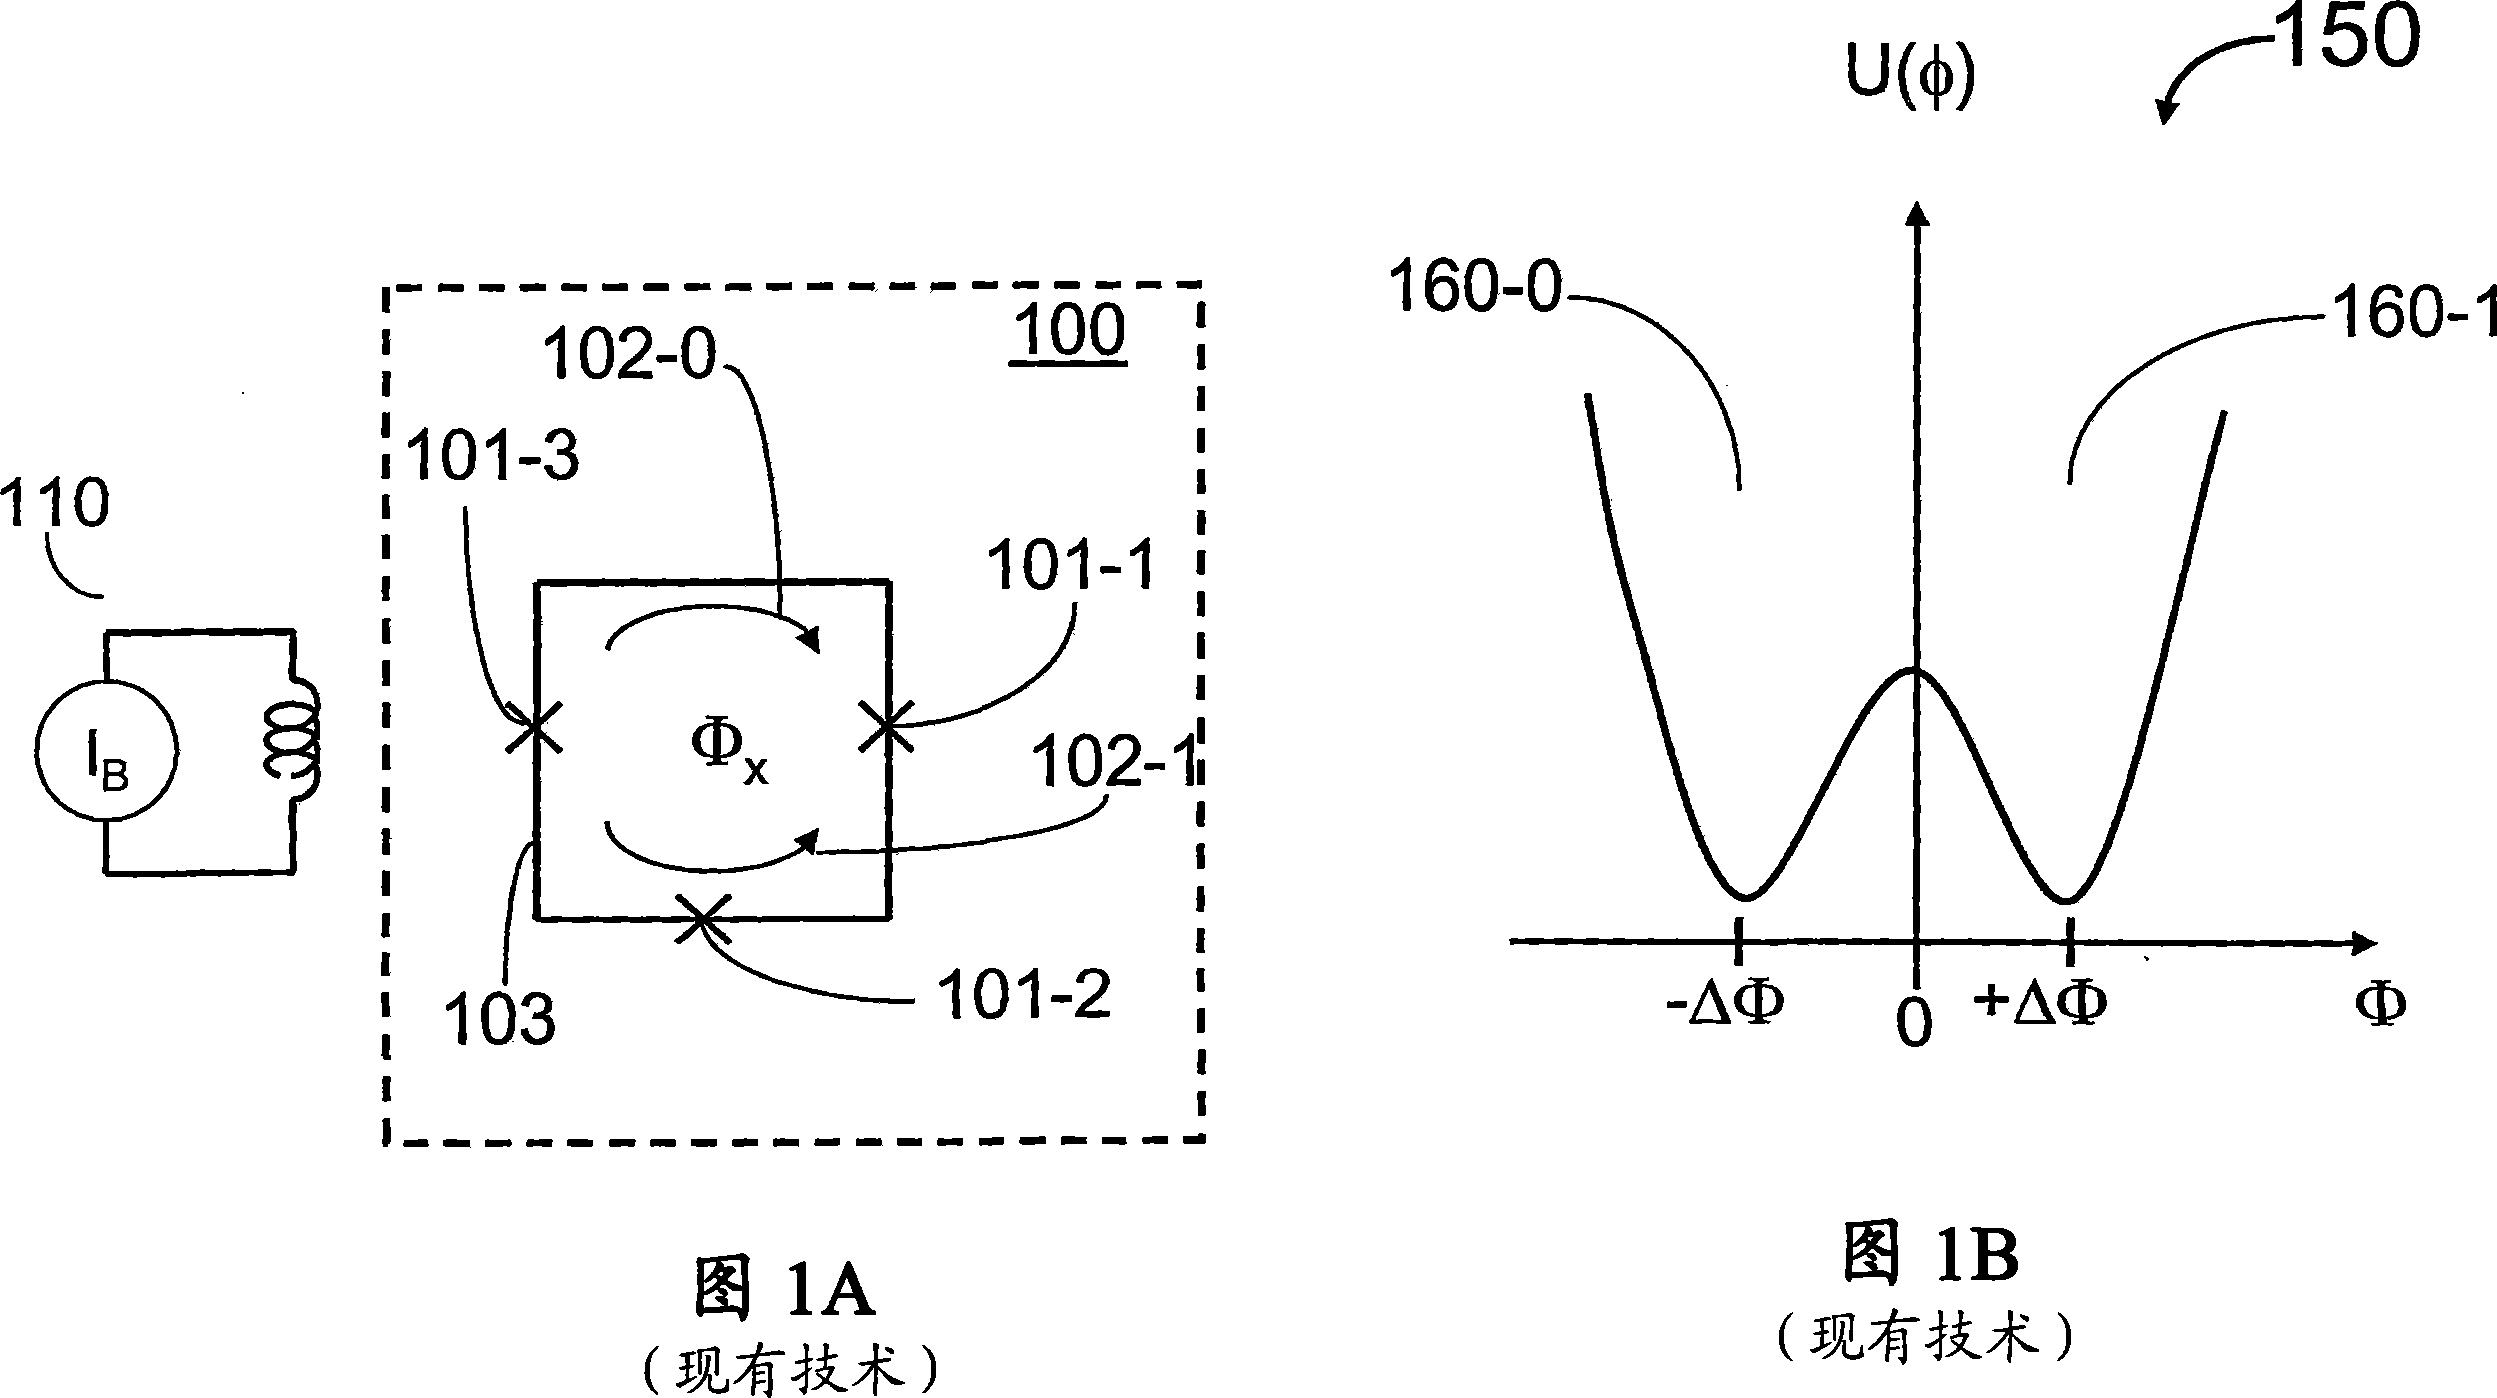 Analog processor comprising quantum devices